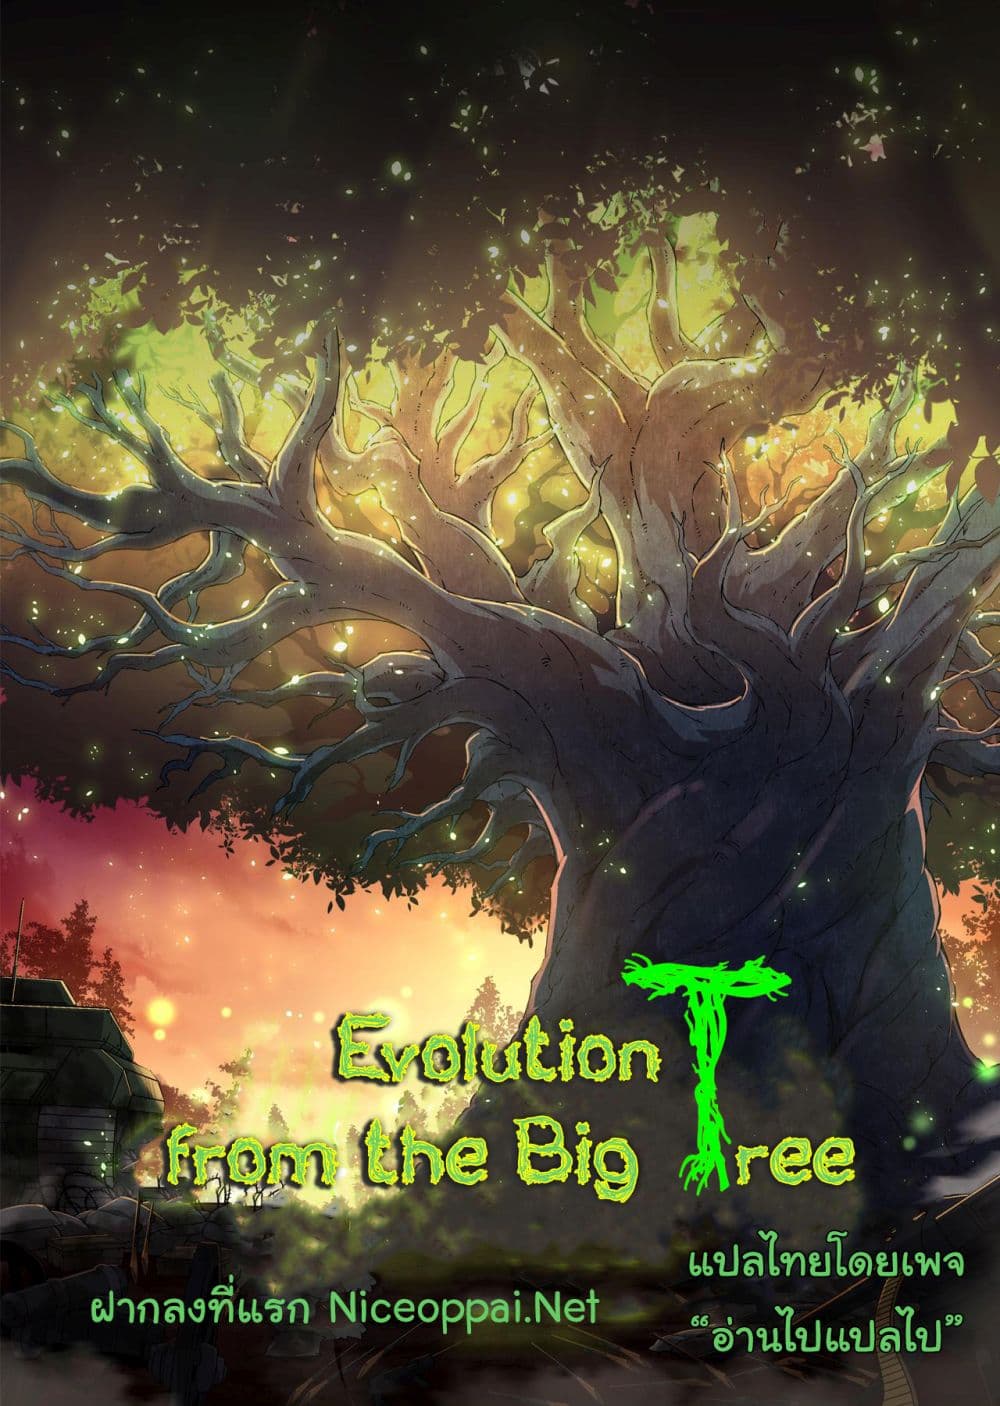 Evolution from the Big Tree Ã Â¸â€¢Ã Â¸Â­Ã Â¸â„¢Ã Â¸â€”Ã Â¸ÂµÃ Â¹Ë† 21 (1)